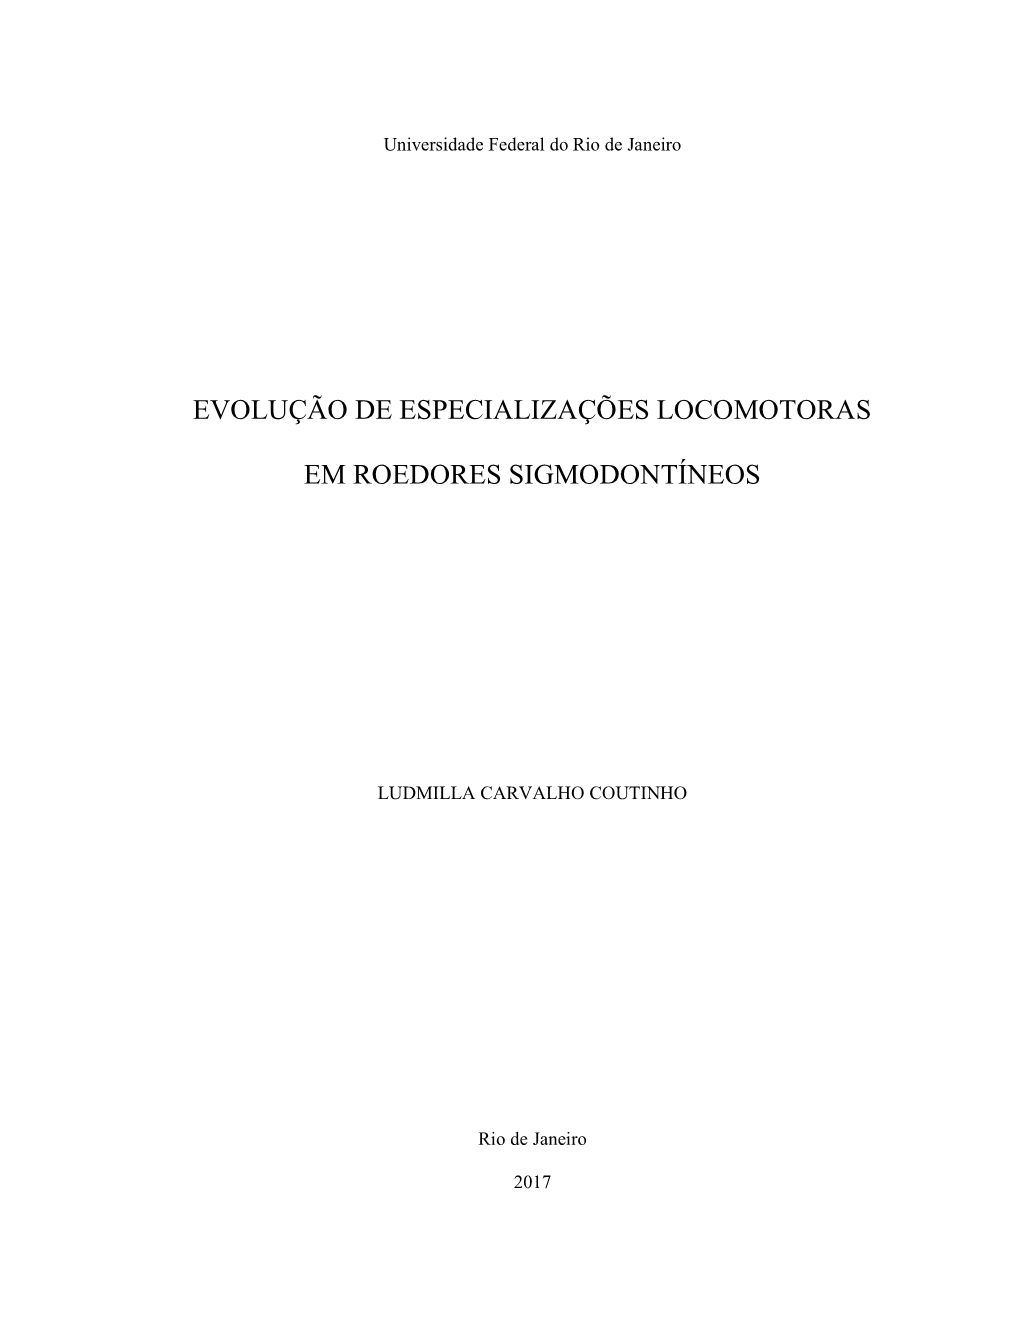 Evolução De Especializações Locomotoras Em Roedores Sigmodontíneos/Ludmilla